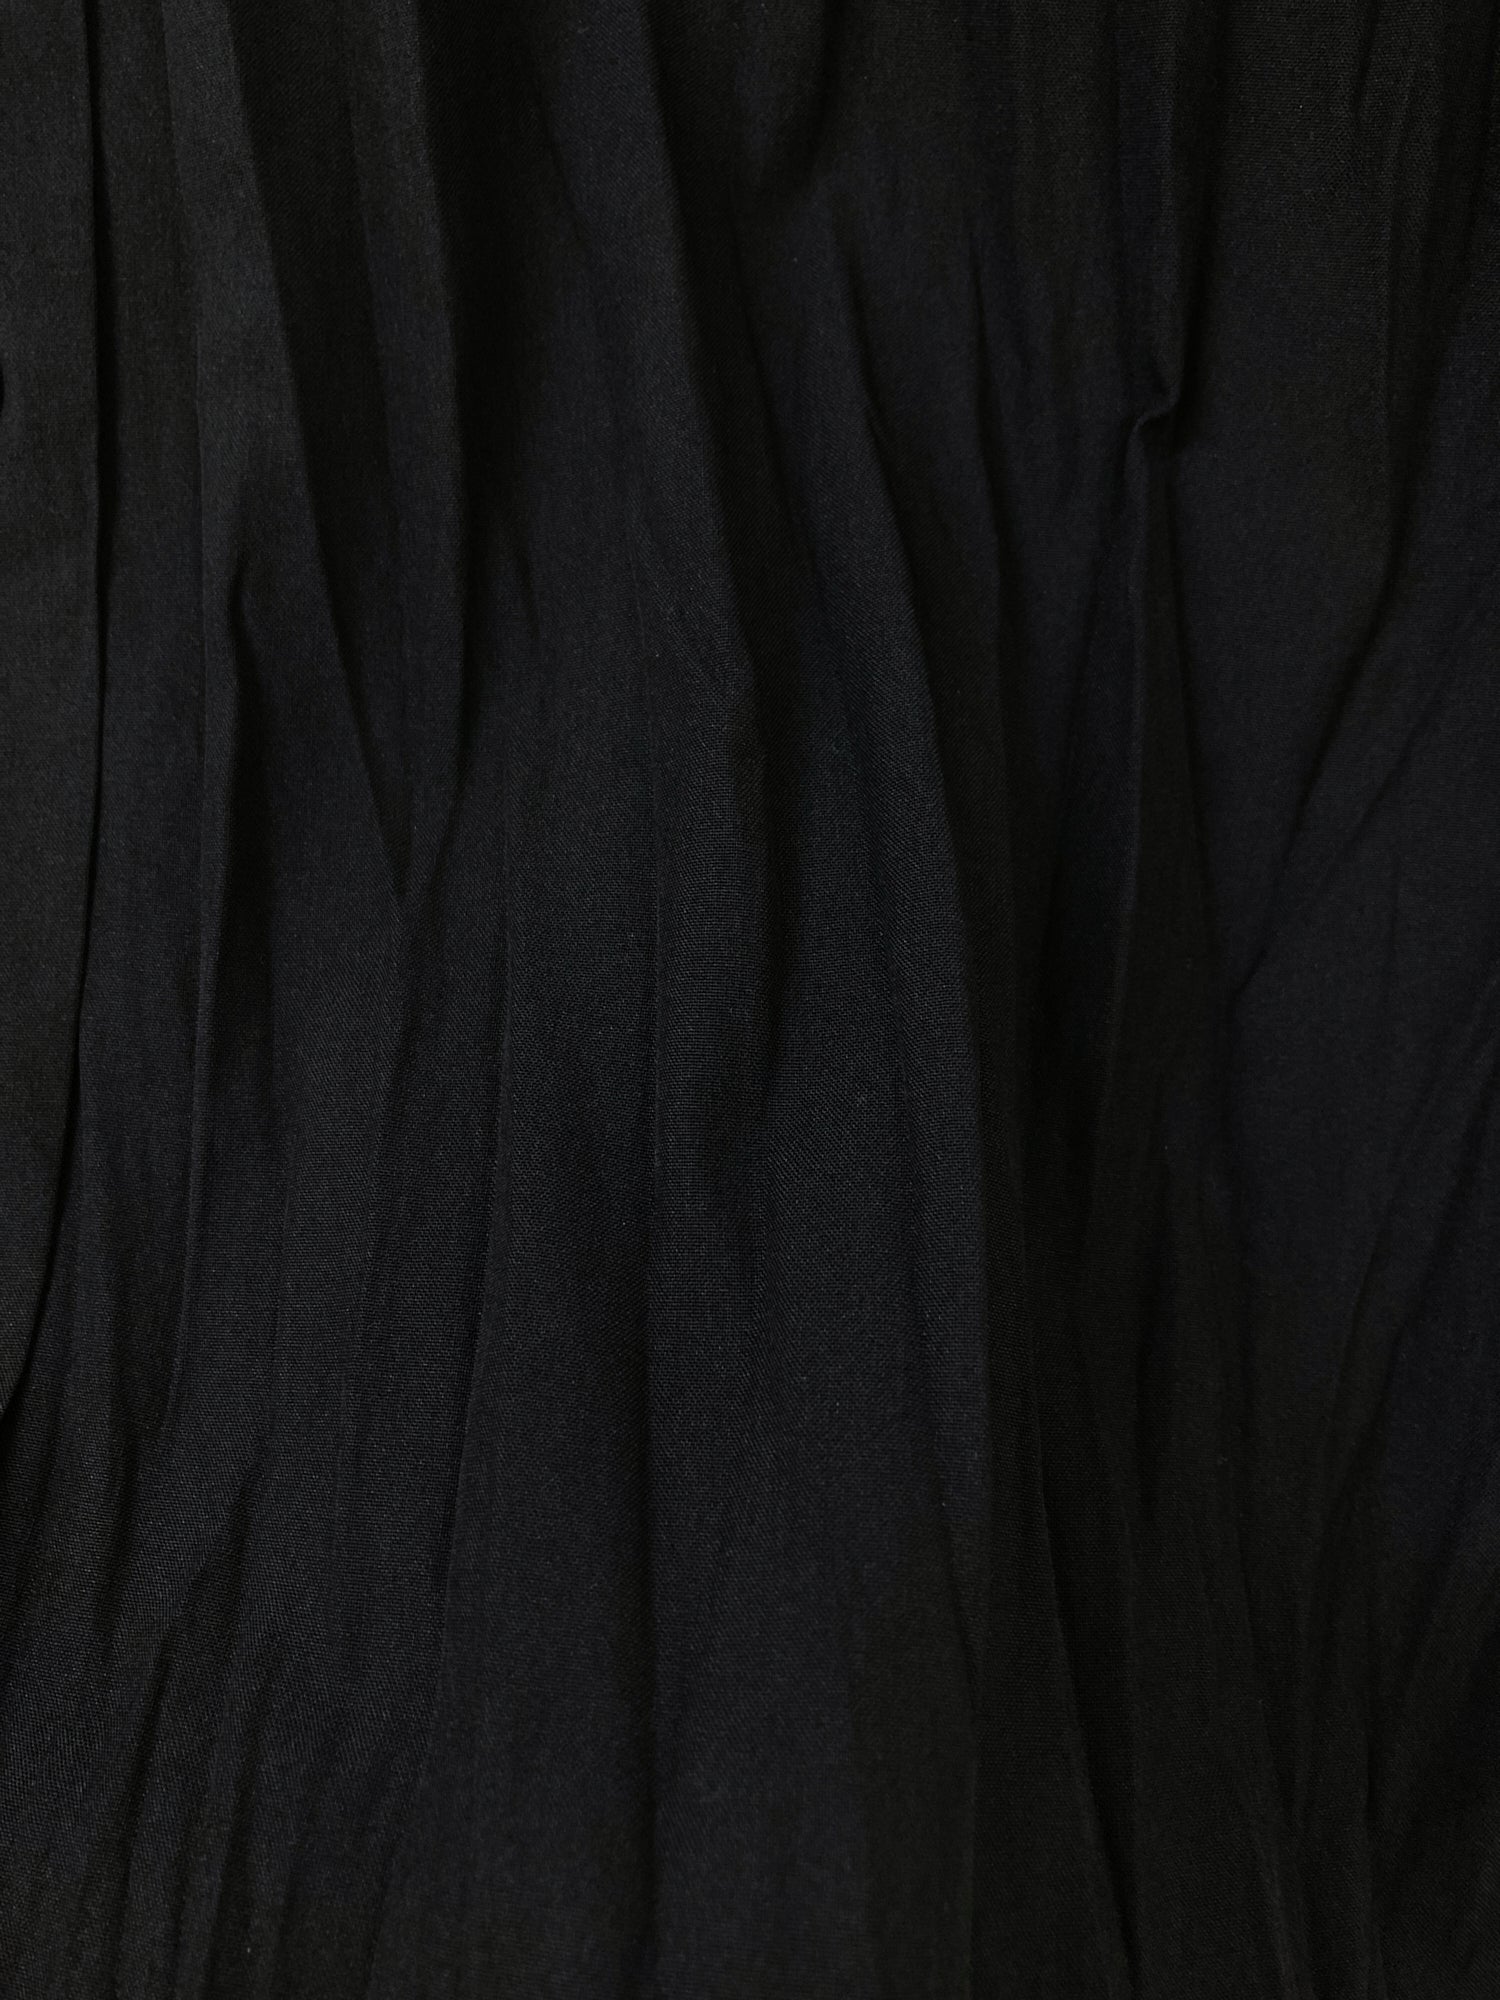 Jean Paul Gaultier Femme 1990s wrinkled black wool blend shirt dress - size 40